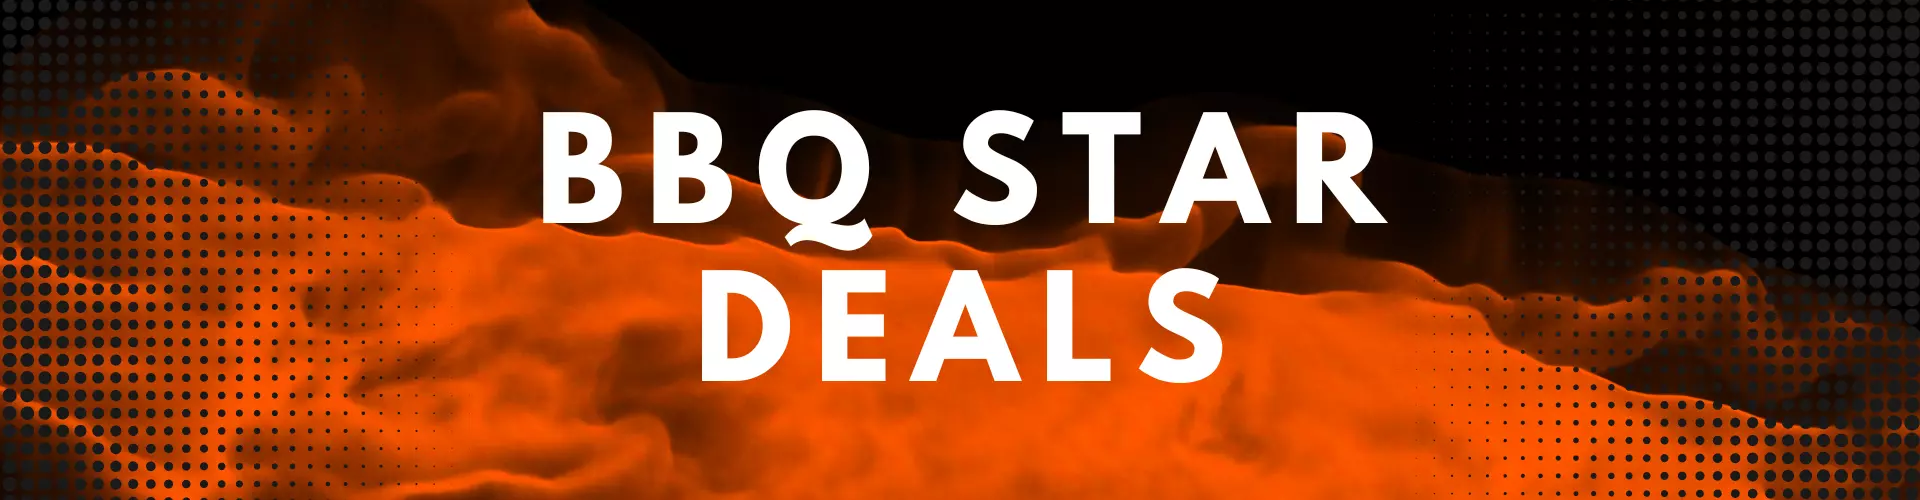 bbq star deals.png